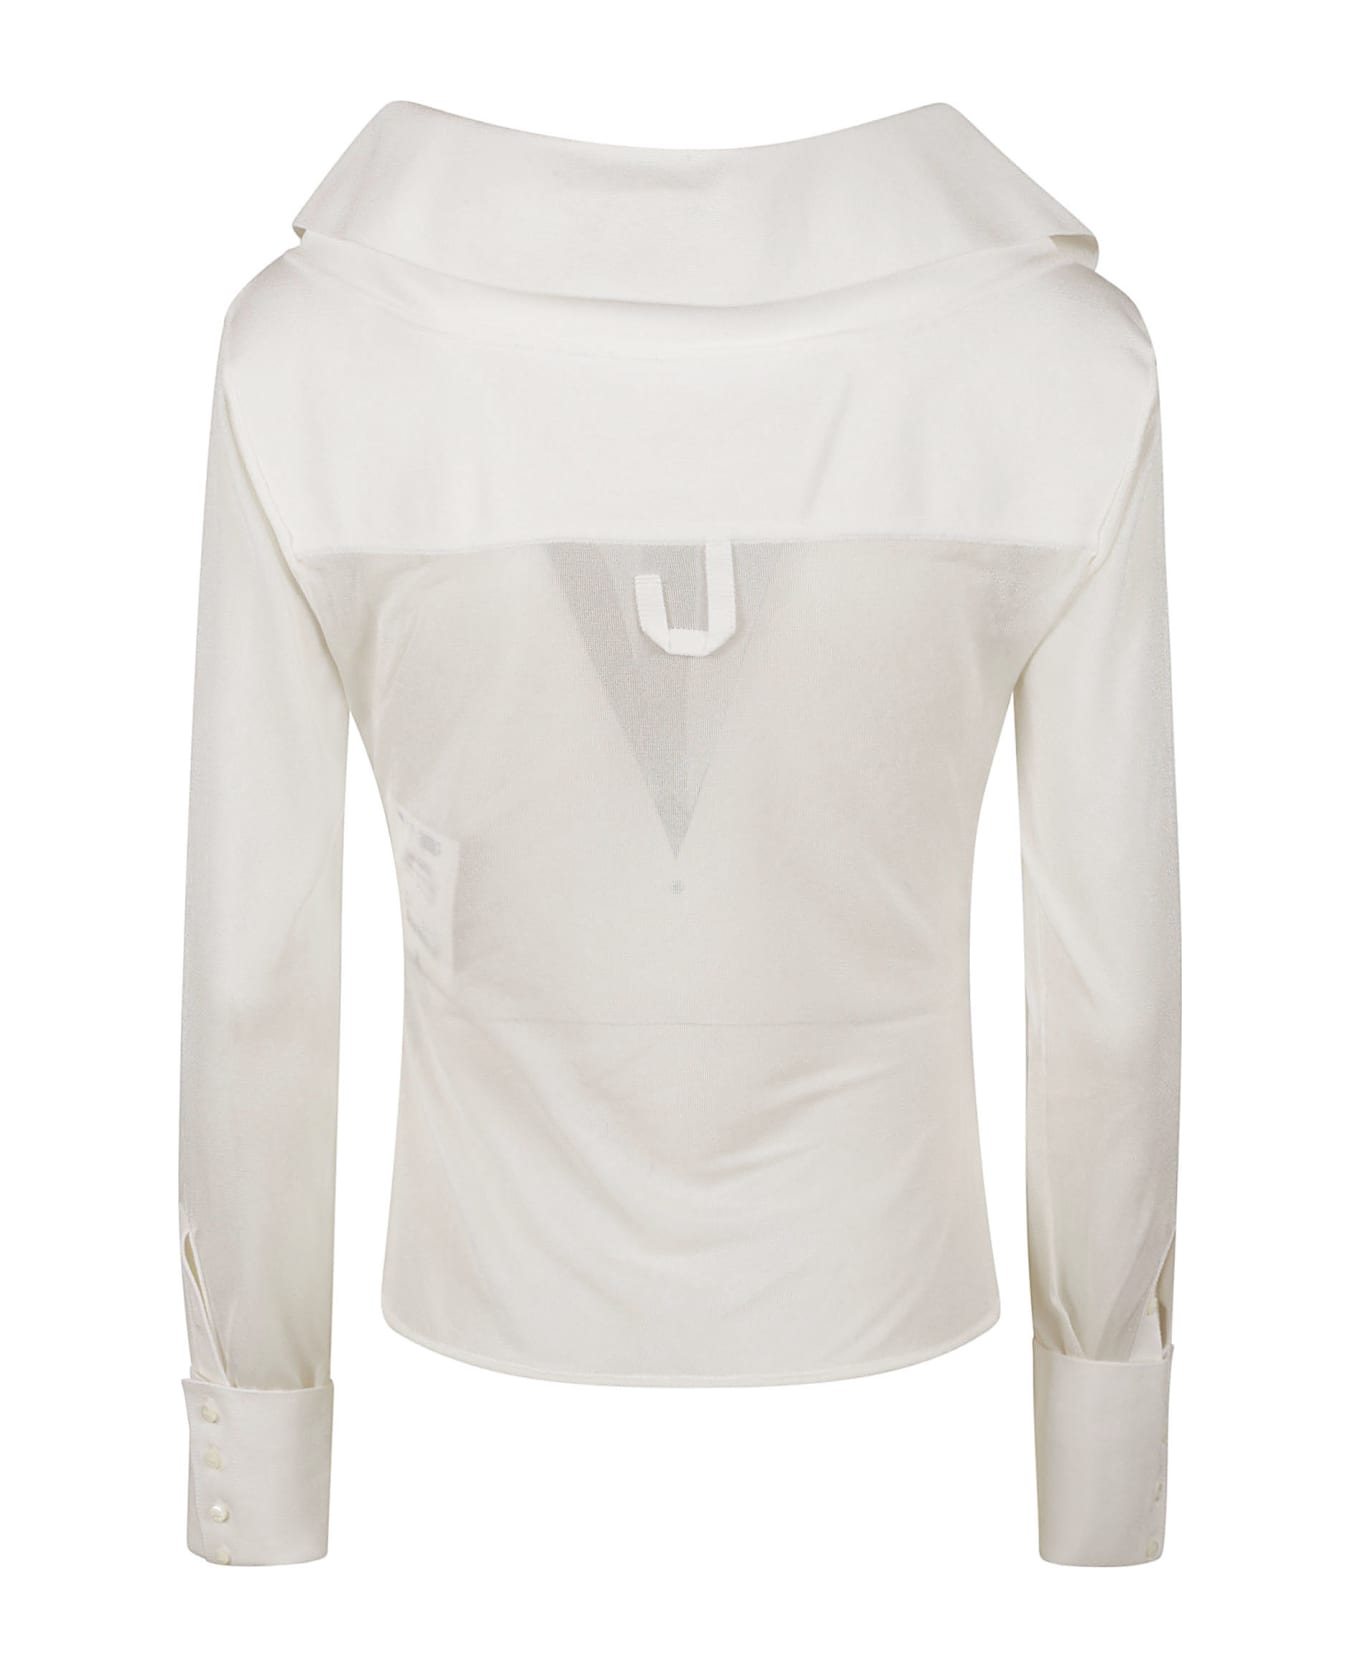 Jacquemus Brezza Shirt - White